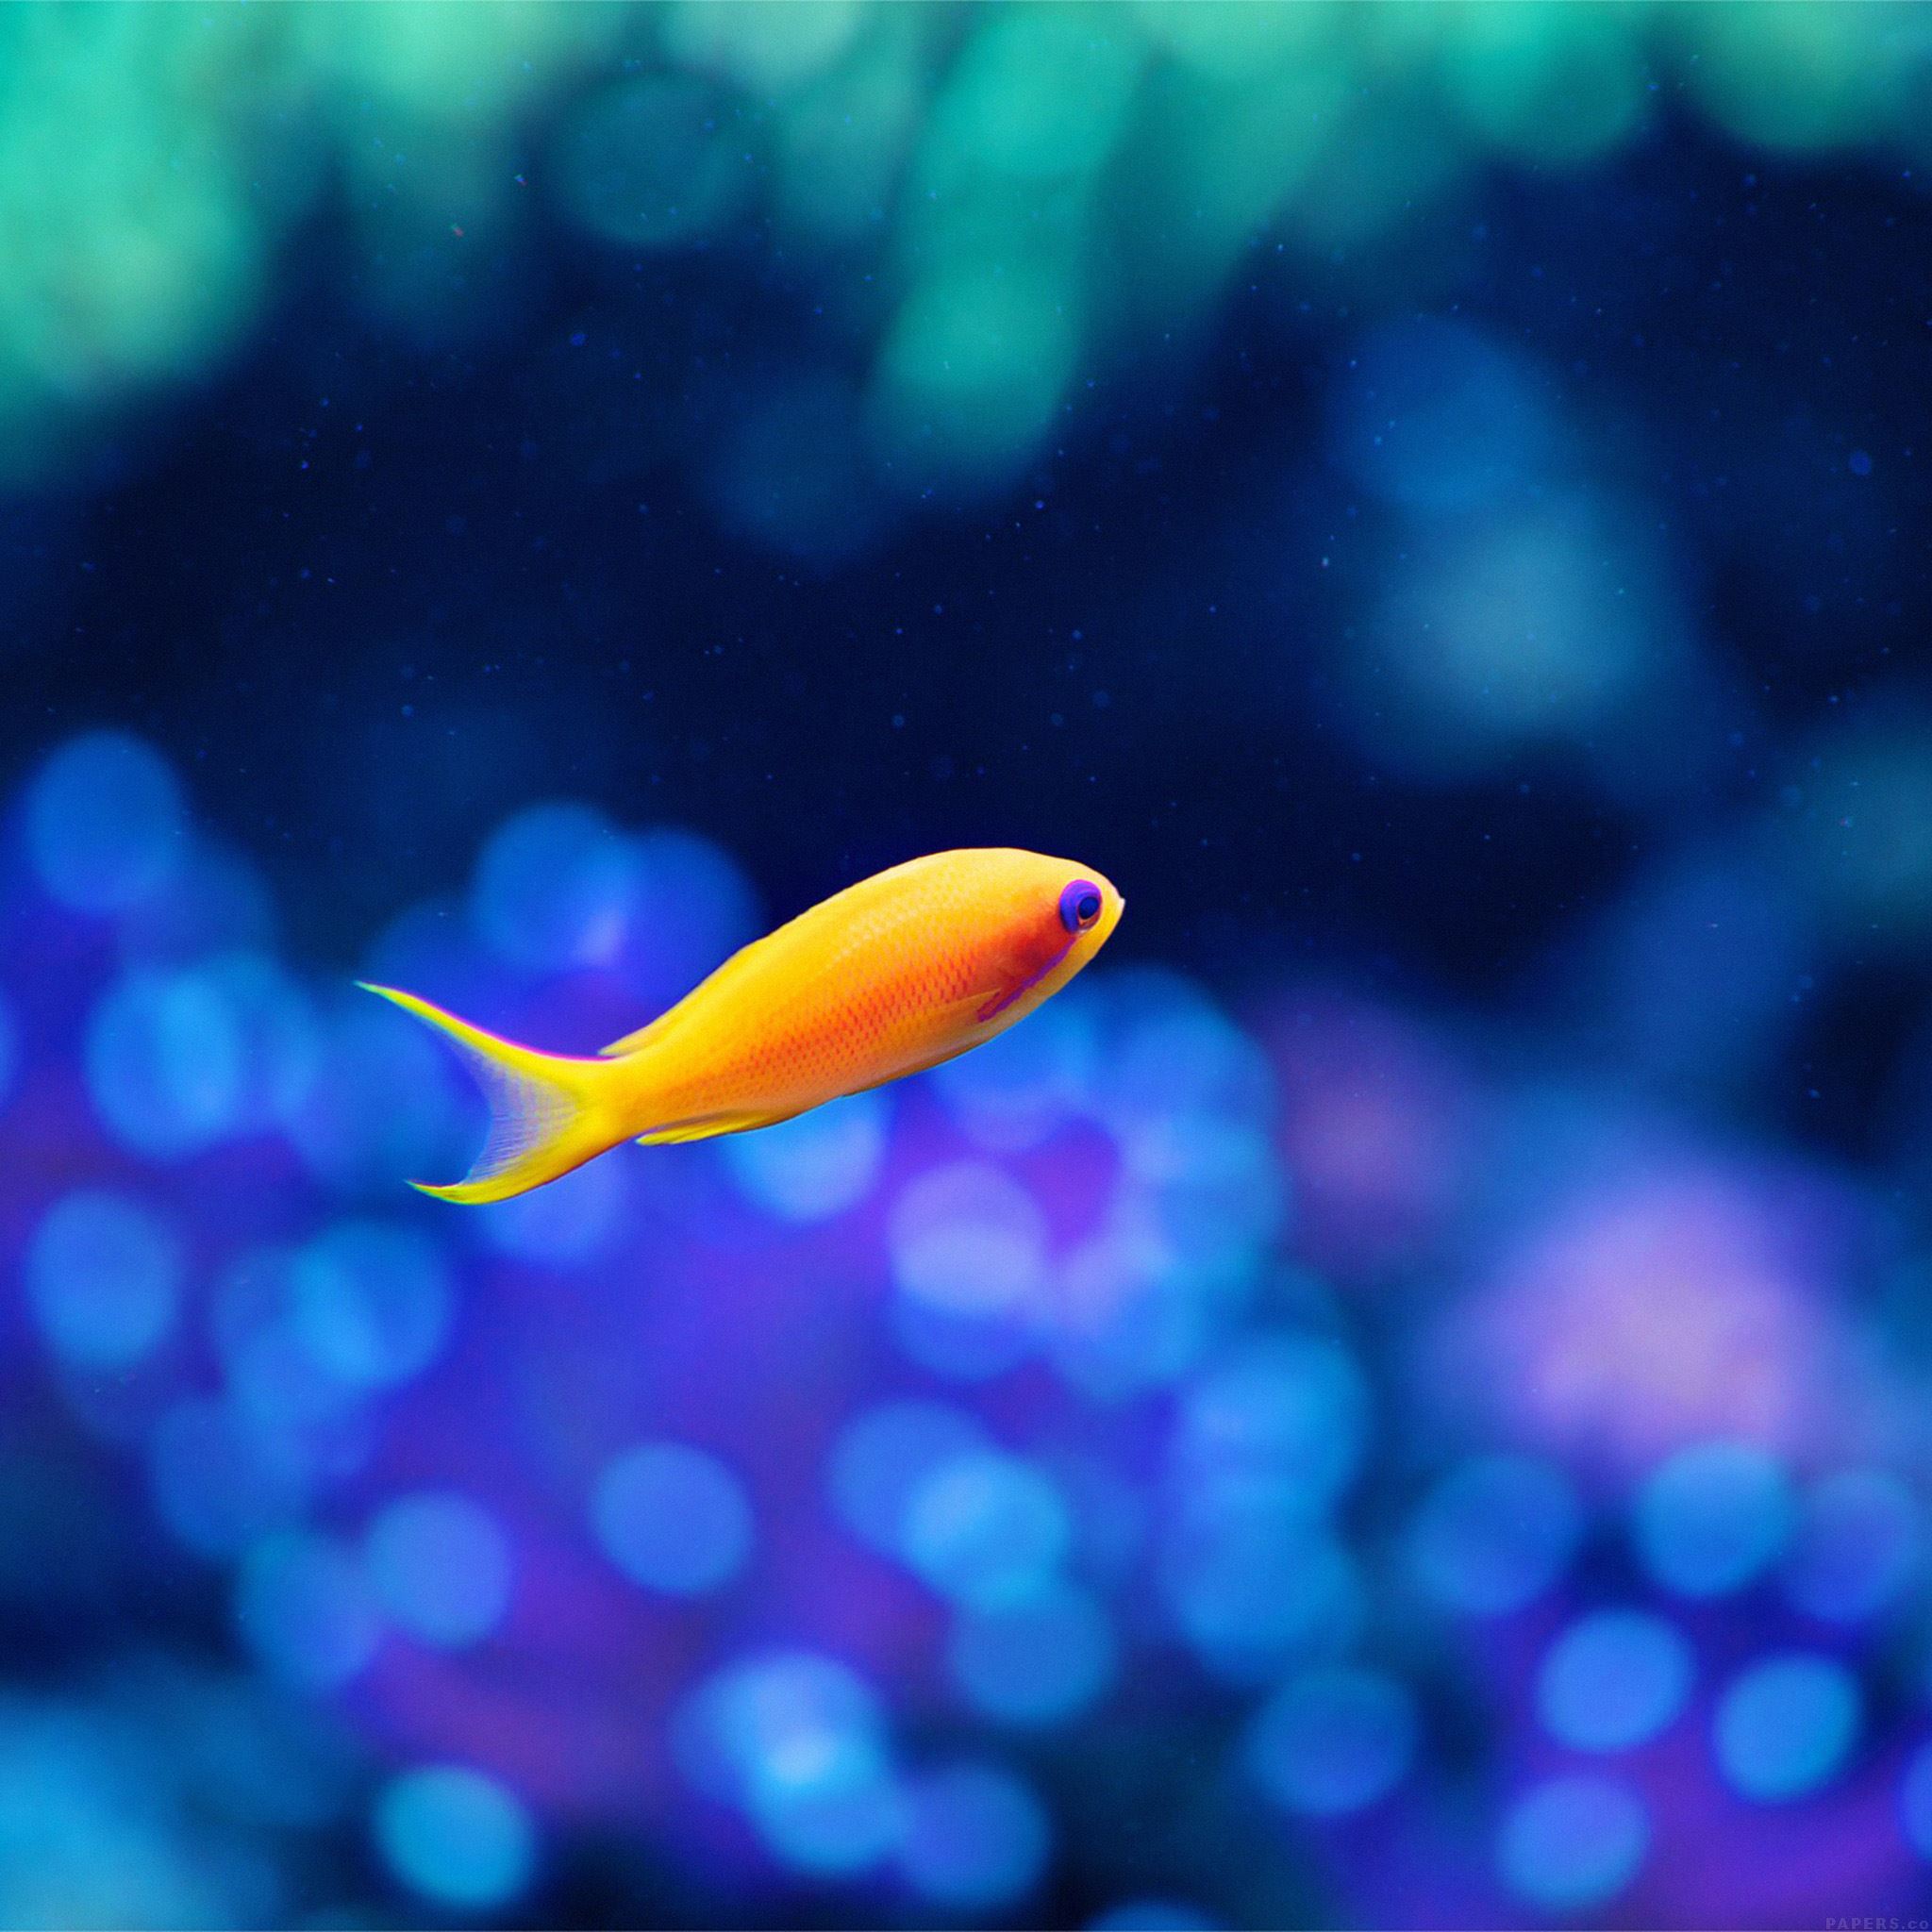 Cute Fish Ocean Sea Animal Nature iPad Air Wallpaper Free Download